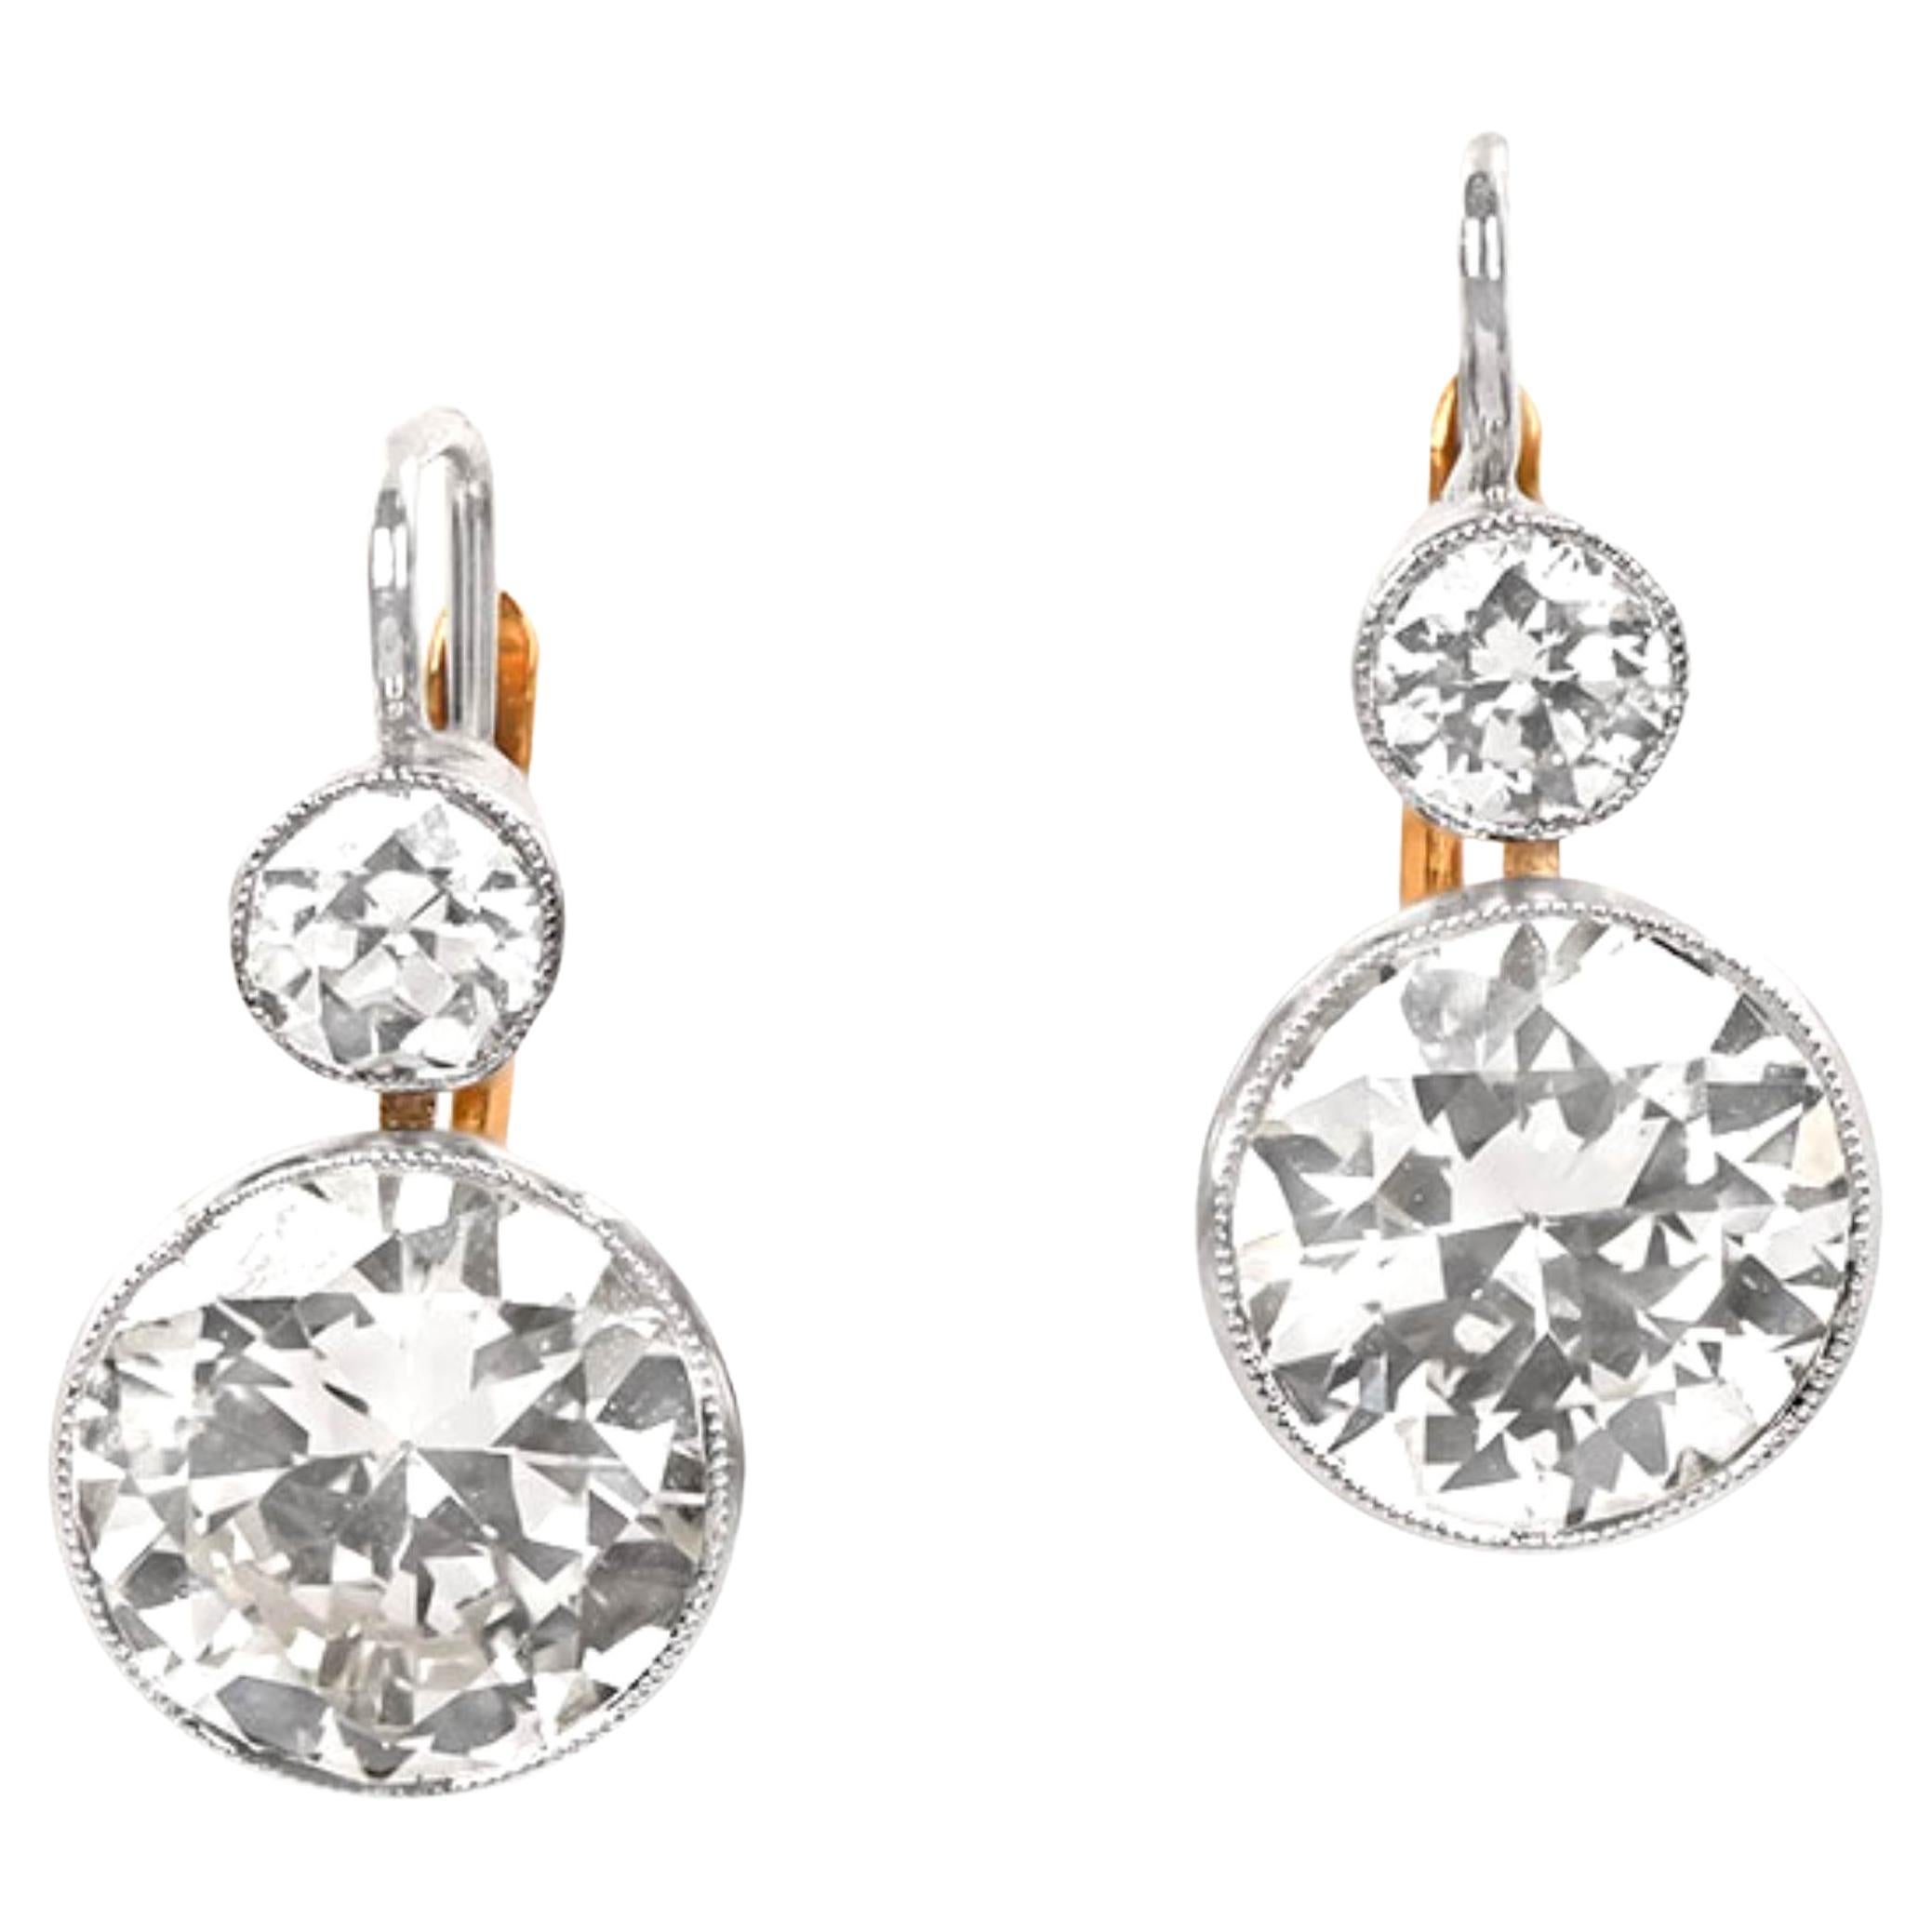 4.04 Carat Old Euro-Cut Diamonds Earrings, VS1-VS2 Clarity, Platinum